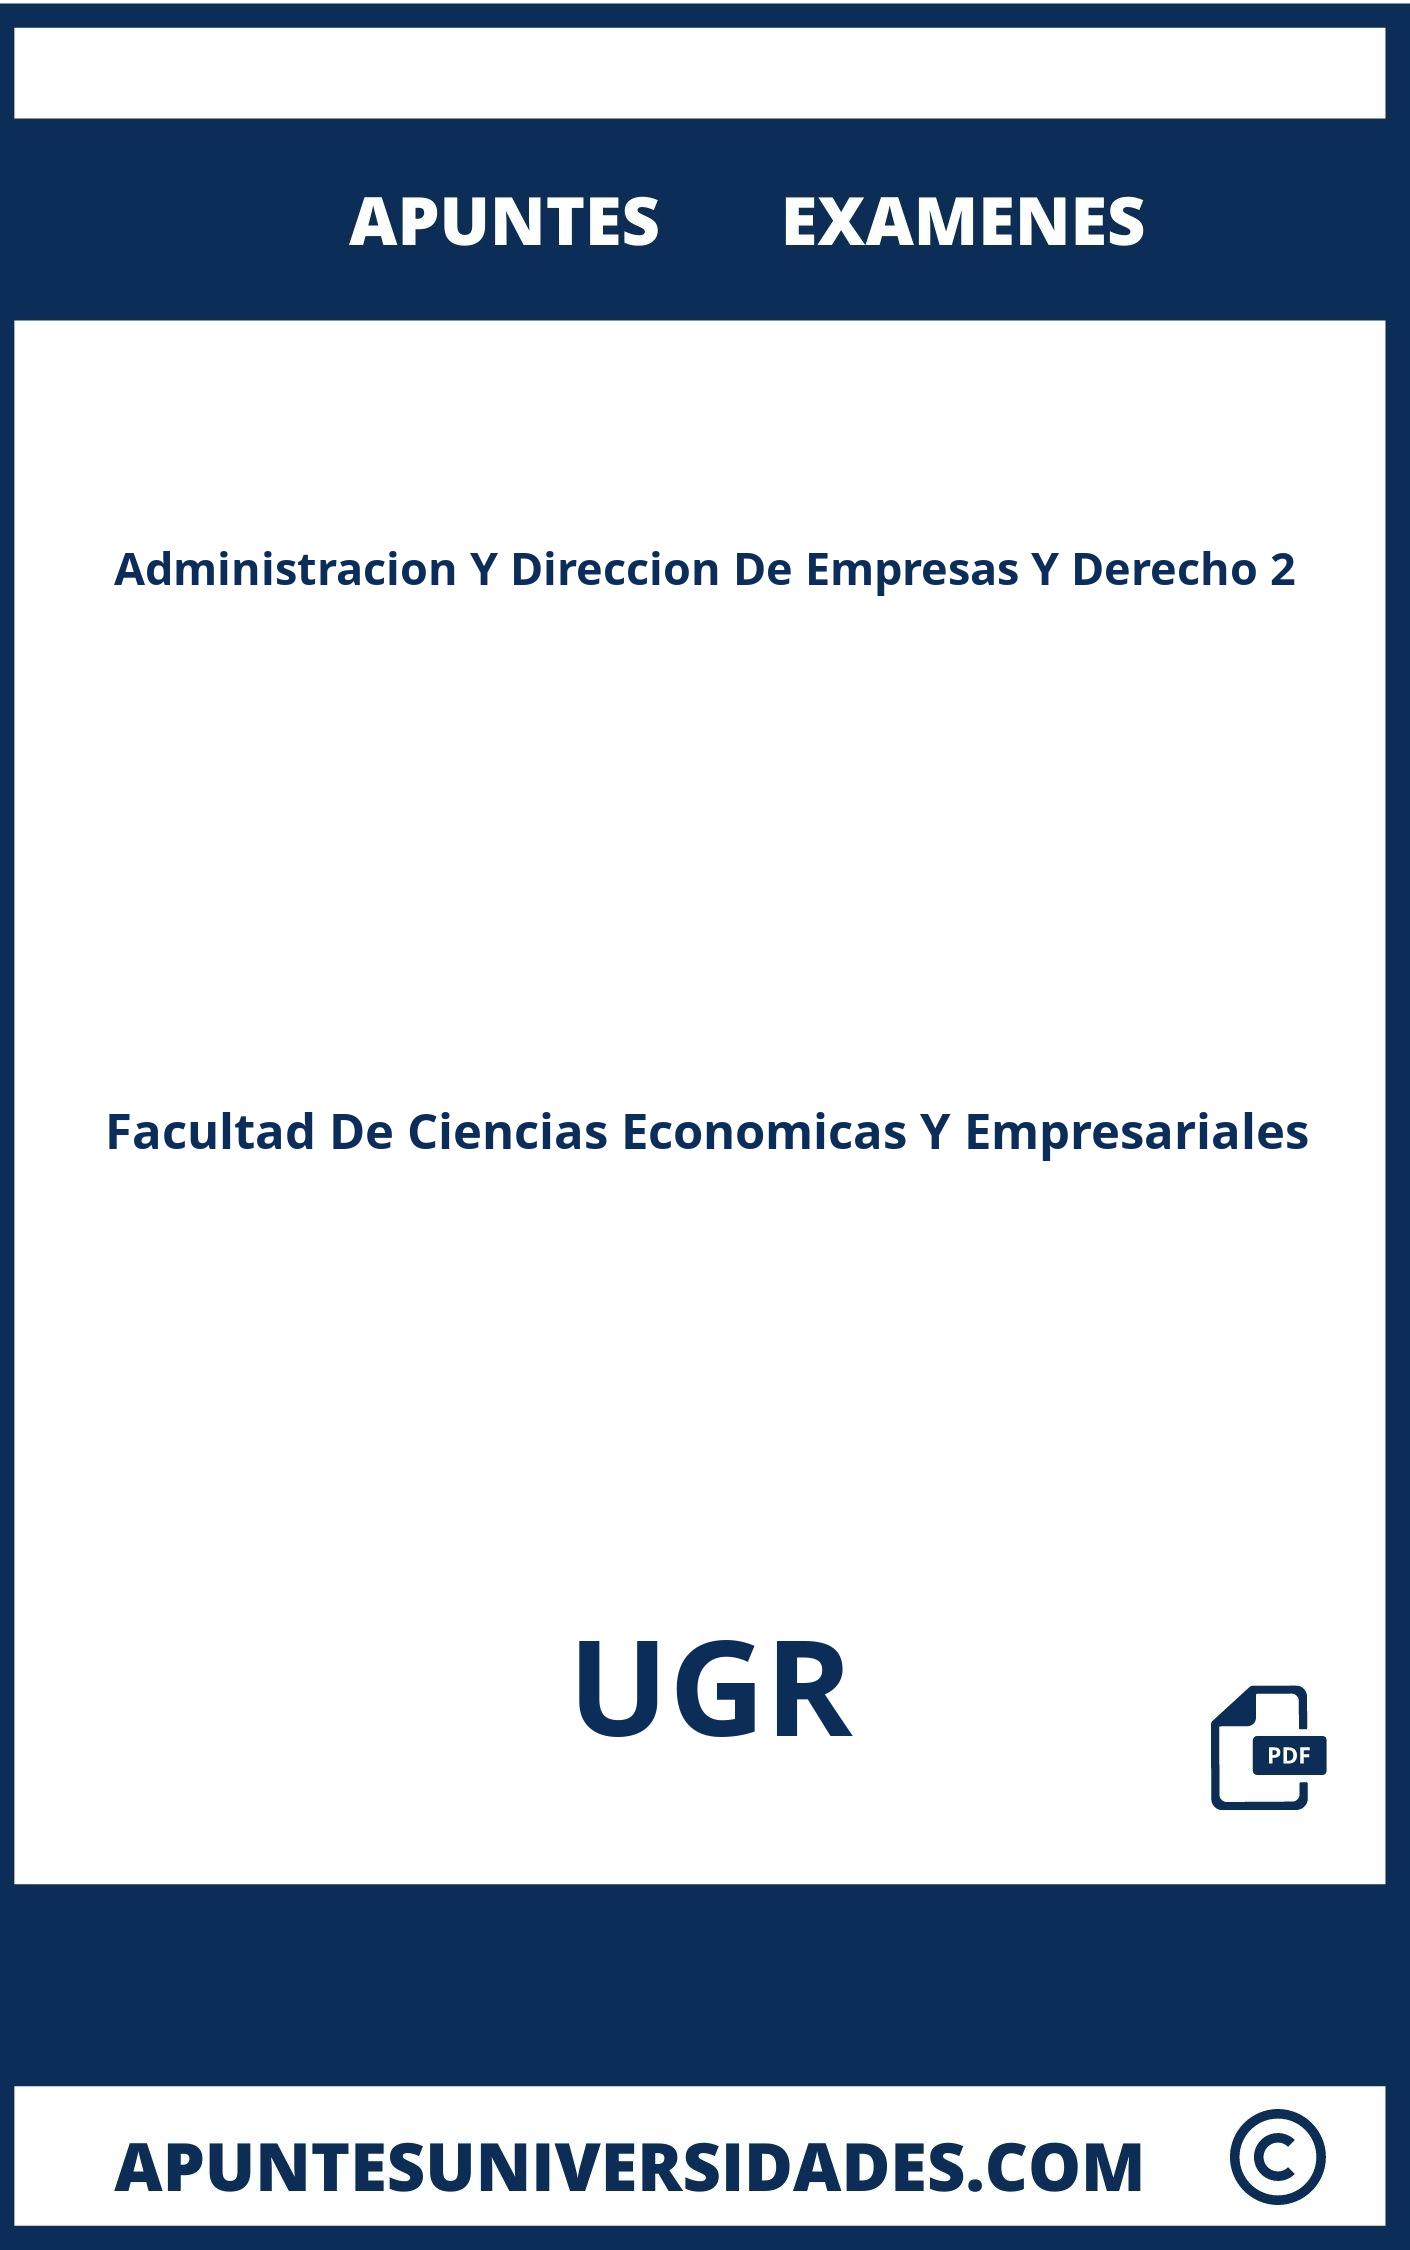 Examenes Apuntes Administracion Y Direccion De Empresas Y Derecho 2 UGR